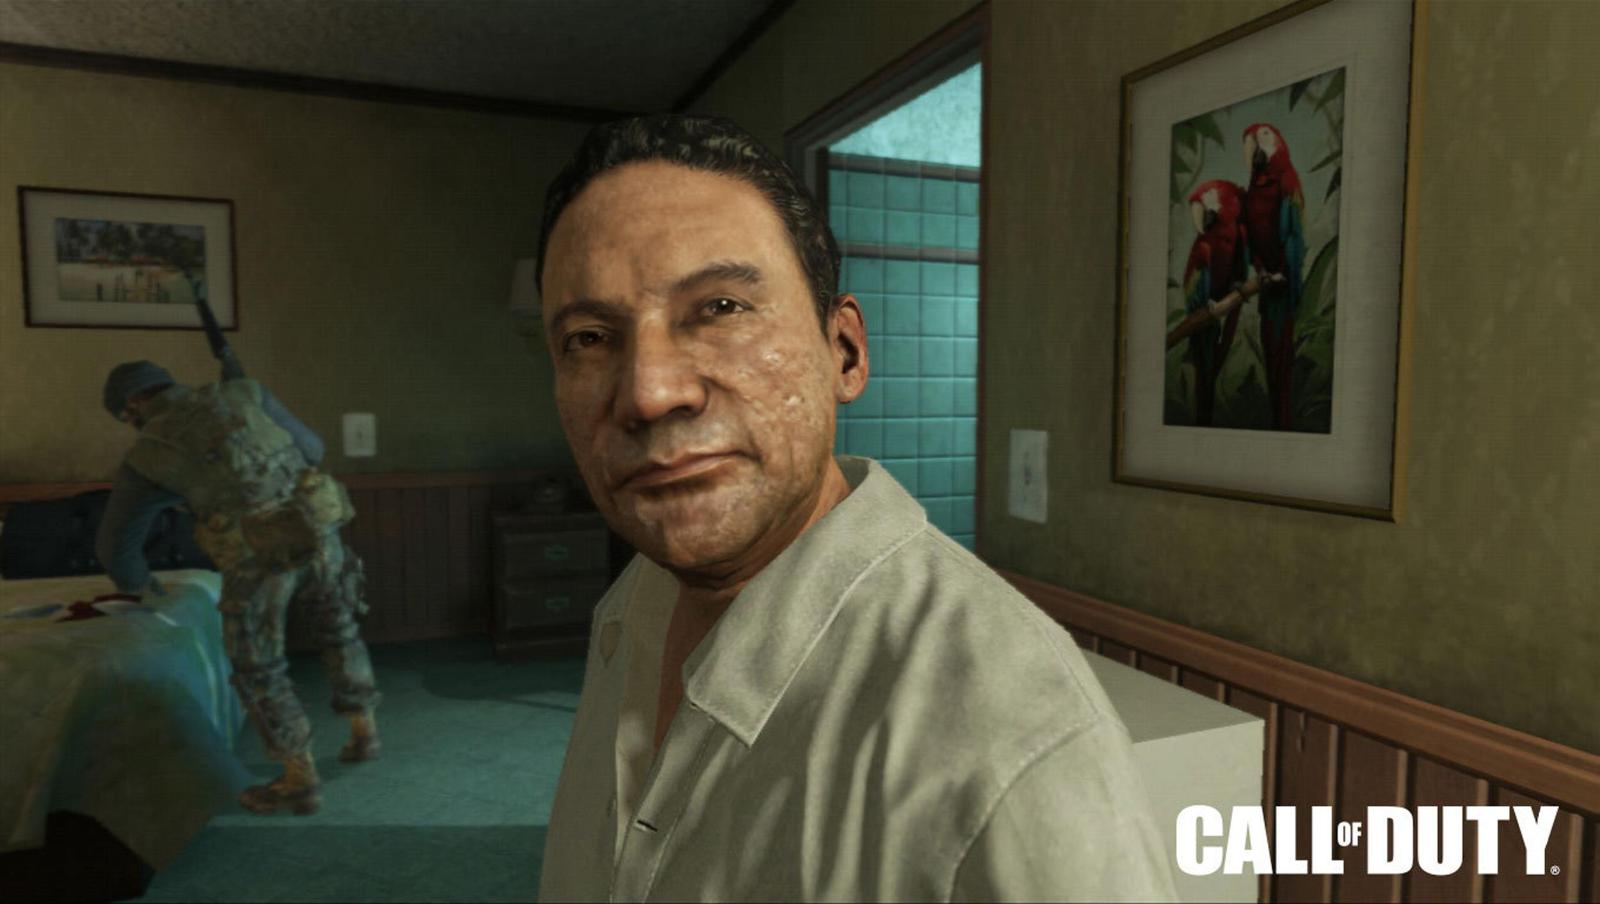 Создатели игры «Call of Duty» использовали образ Норьеги, за что тот подал на них в суд.